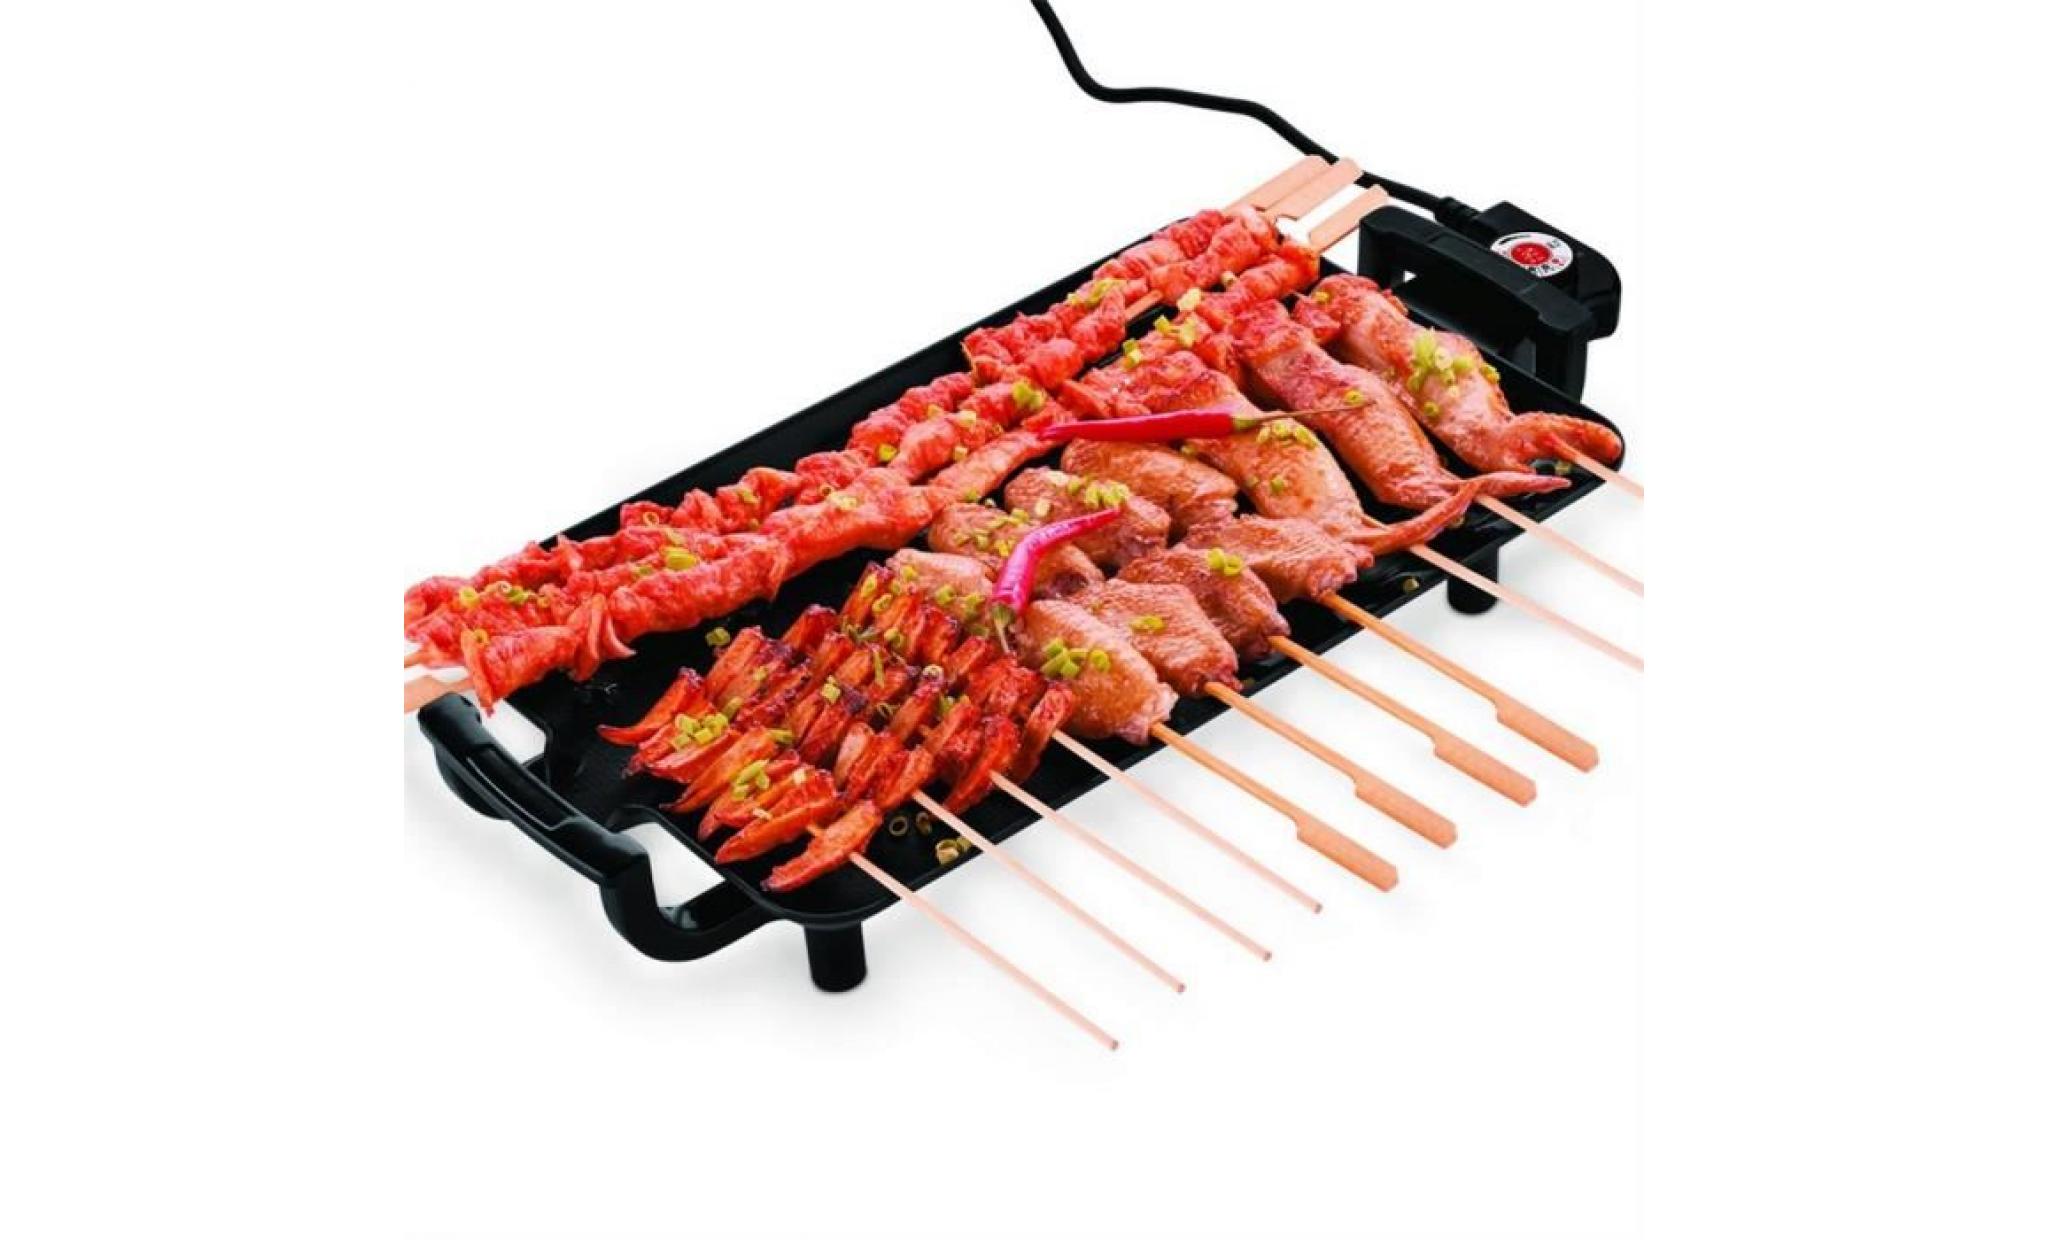 antiadhésive grille de table électrique teppanyaki barbecue appareil cuisine 400 * 230 * 90mm